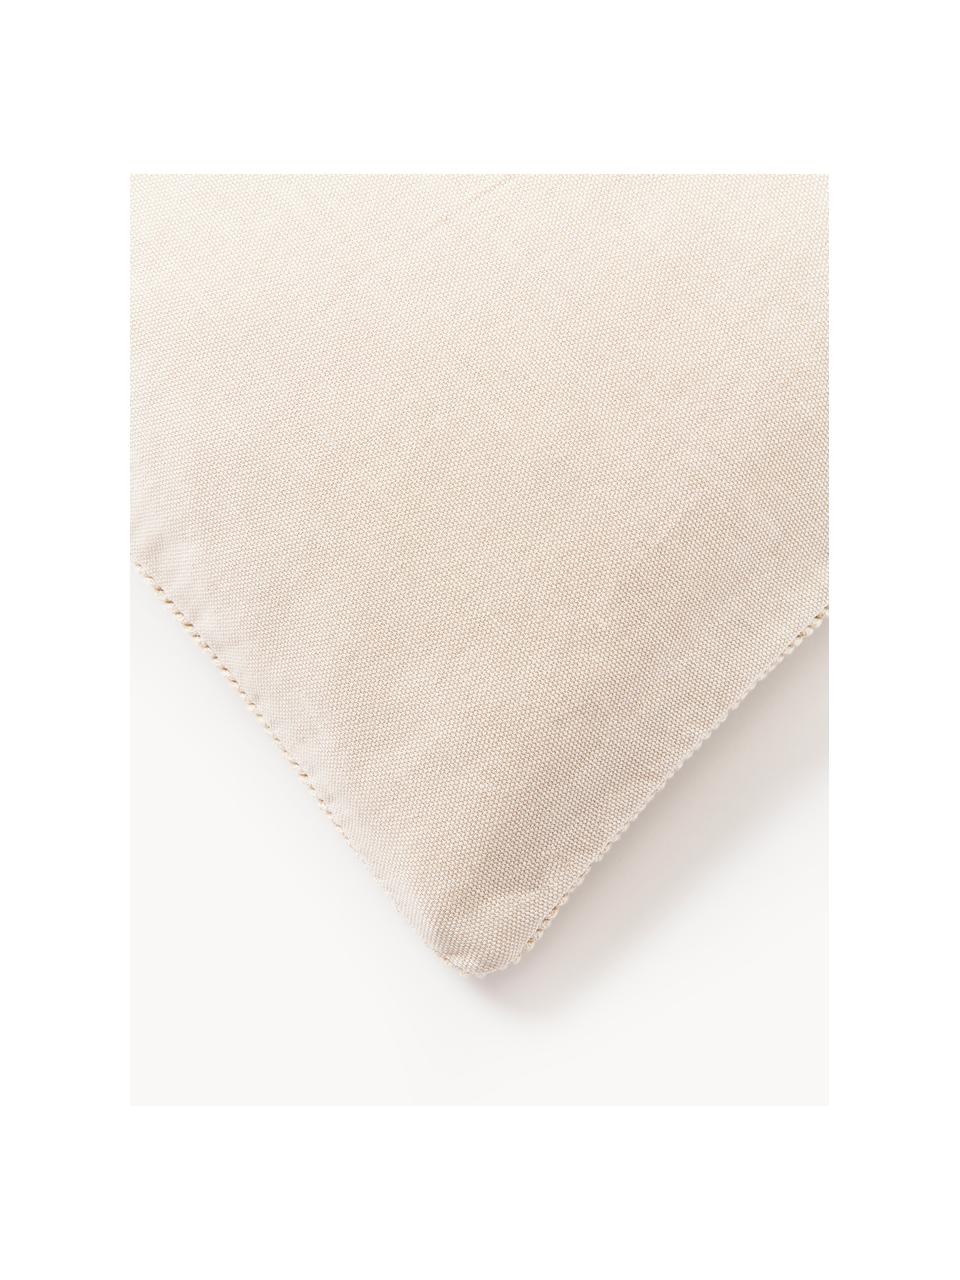 Poszewka na poduszkę z bawełny Rino, 100% bawełna, Beżowy, S 45 x D 45 cm